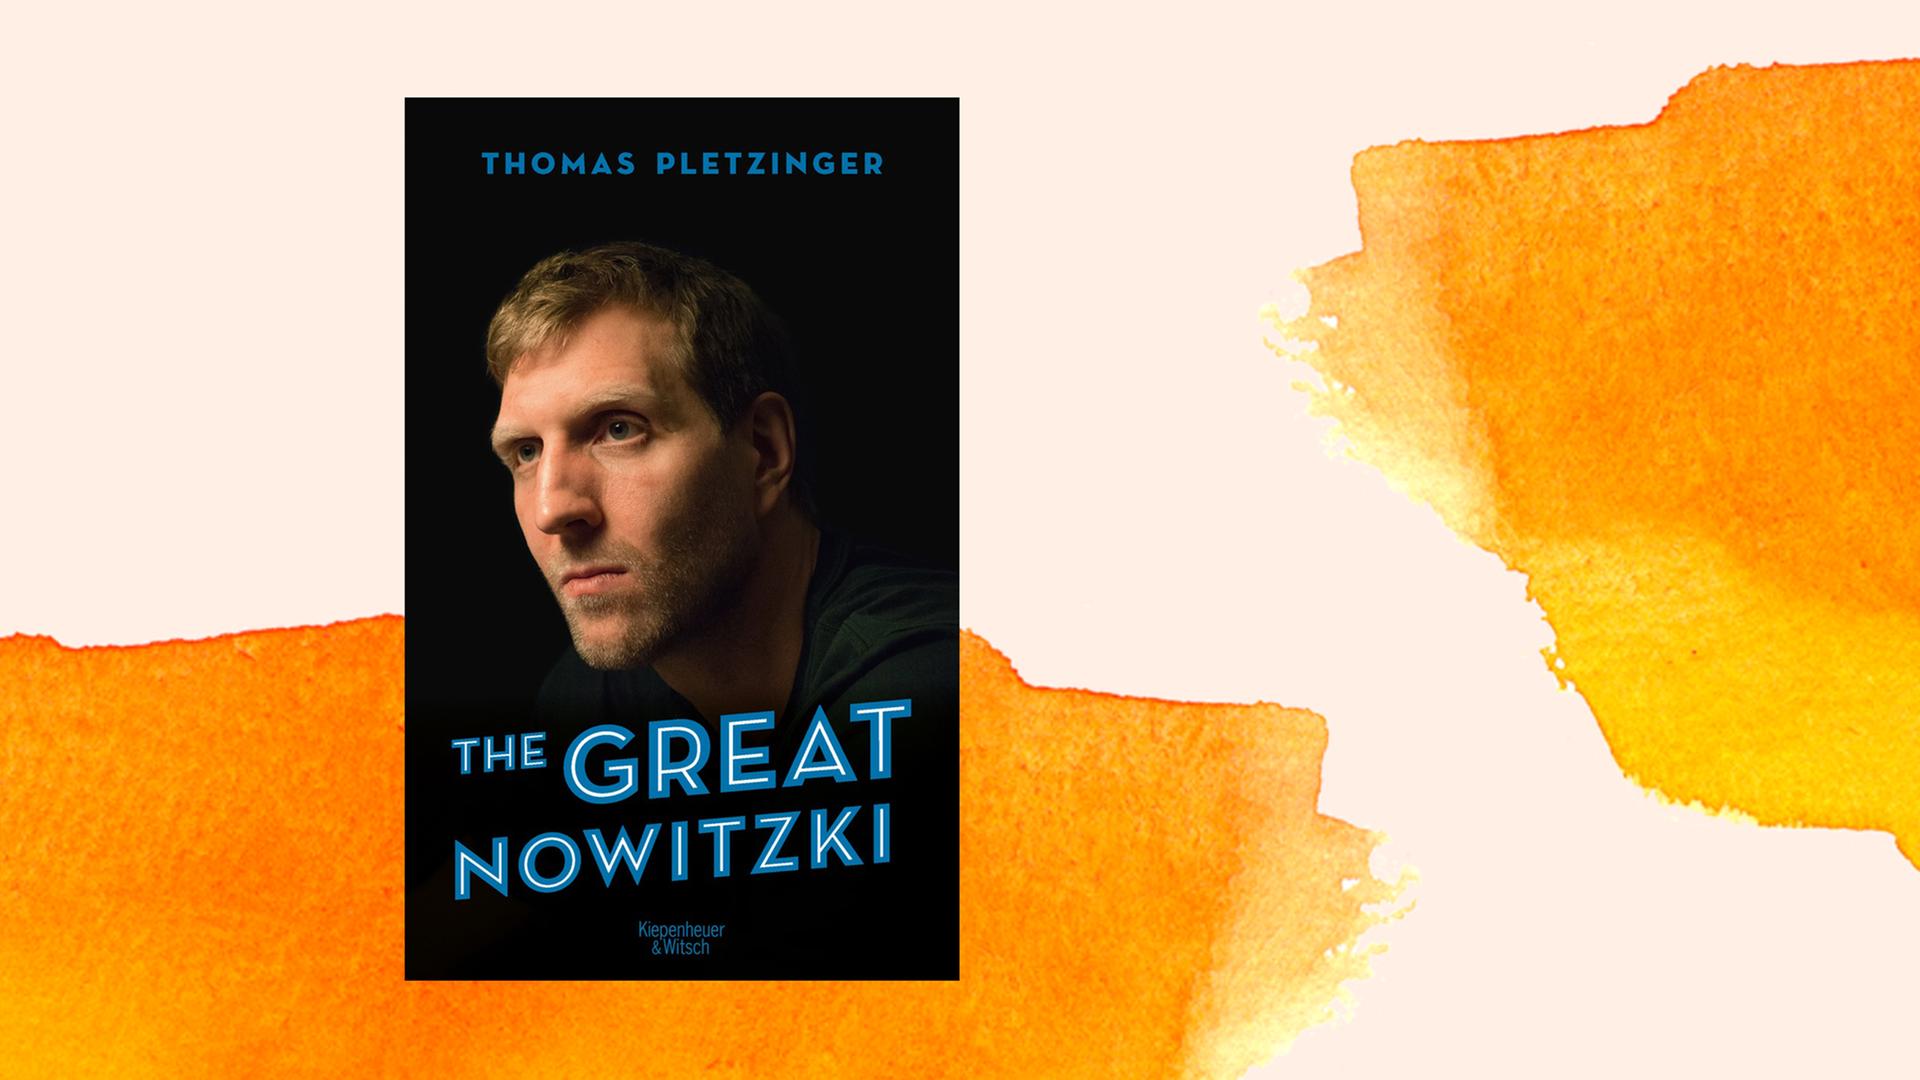 Das Buchcover zeigt Dirk Novitzkis Kopf im Halbprofil vor dunklem Hintergrund.